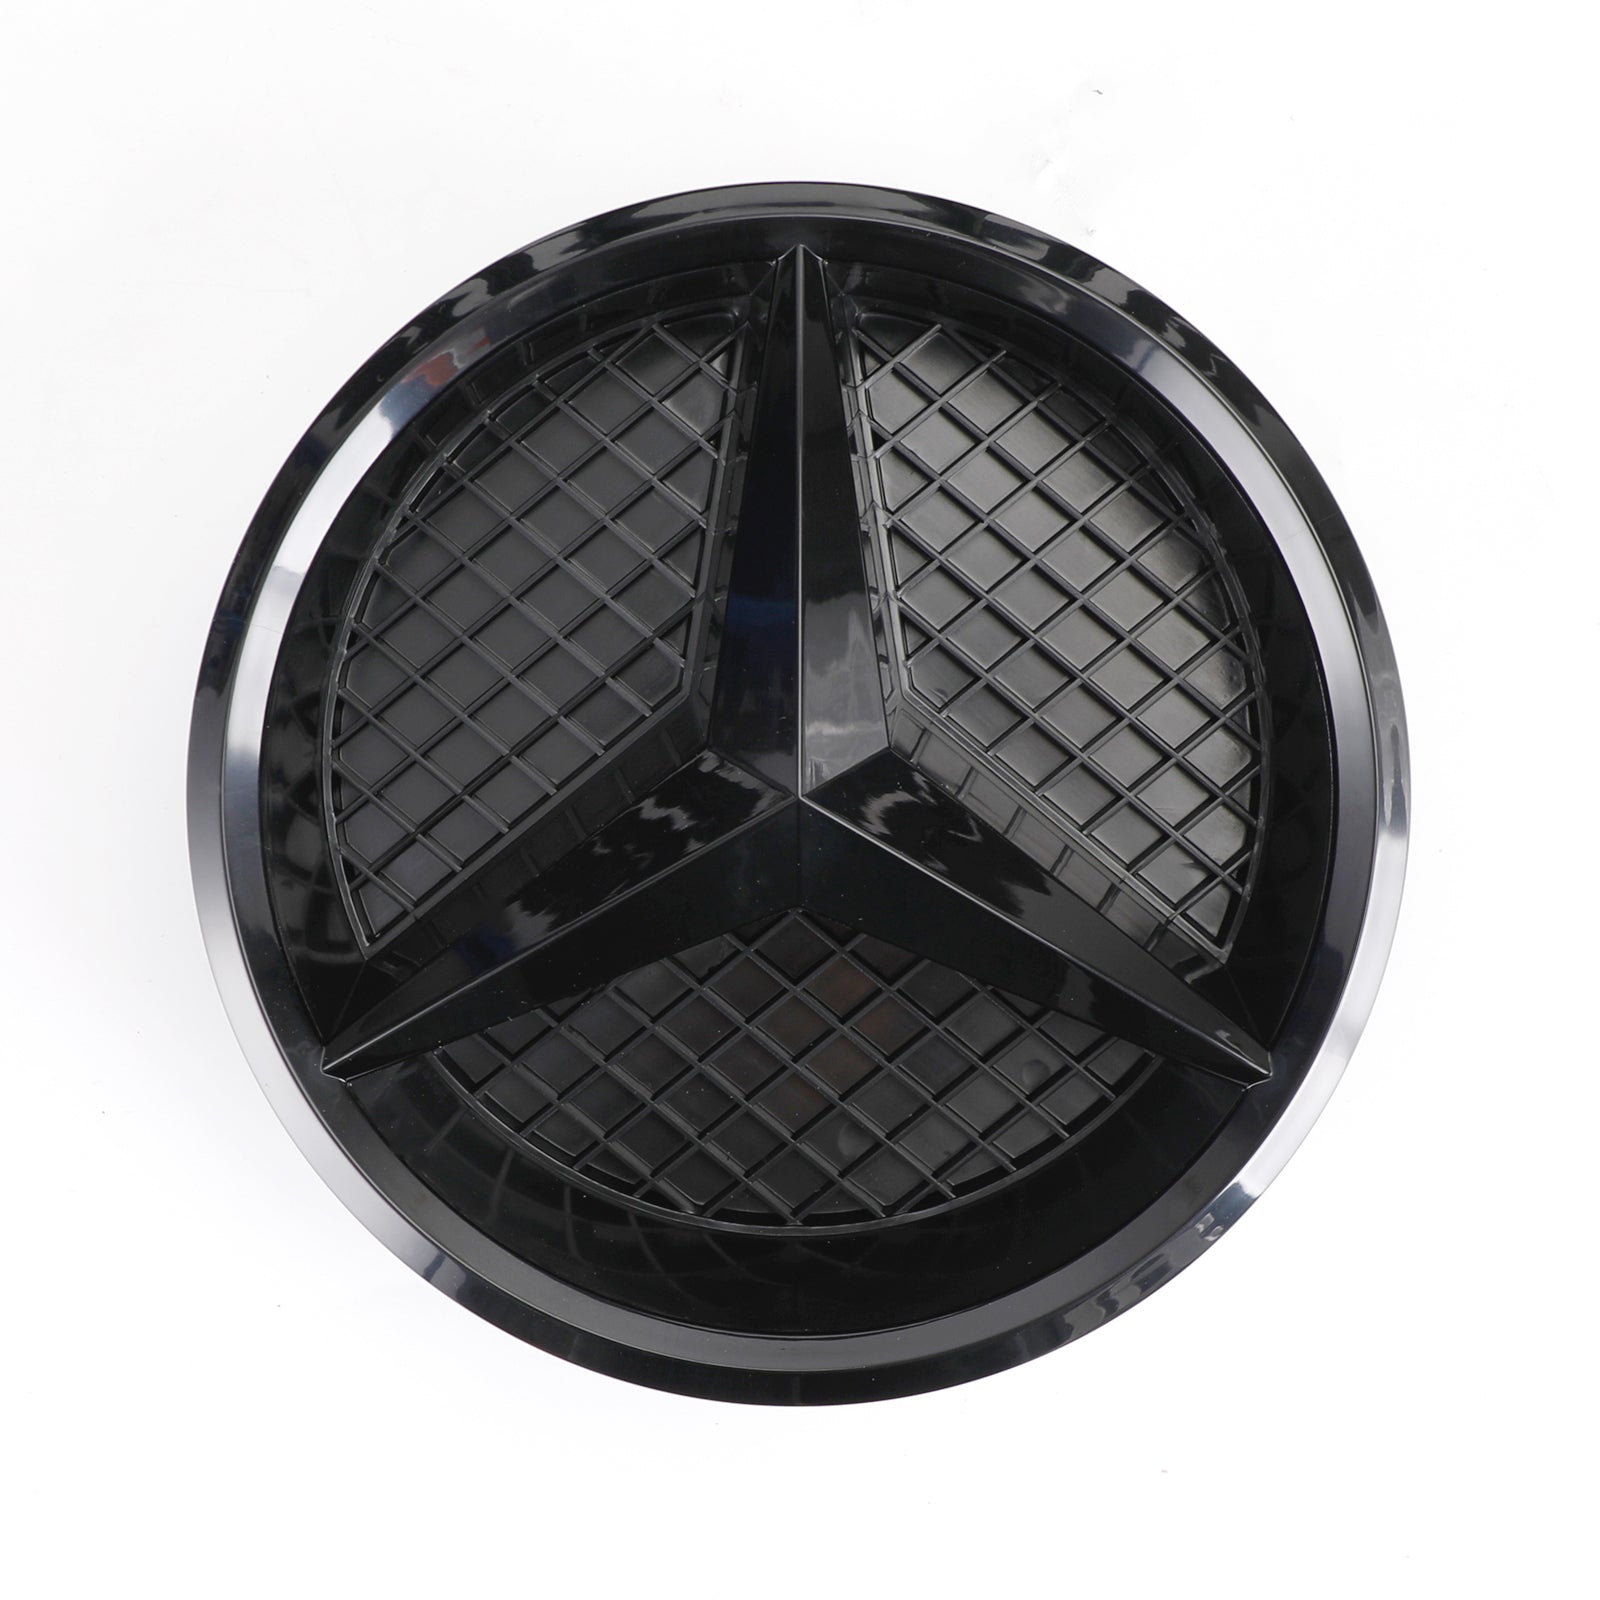 2013-2015 Mercedes Benz Classe A W176 Griglia griglia paraurti anteriore nero lucido